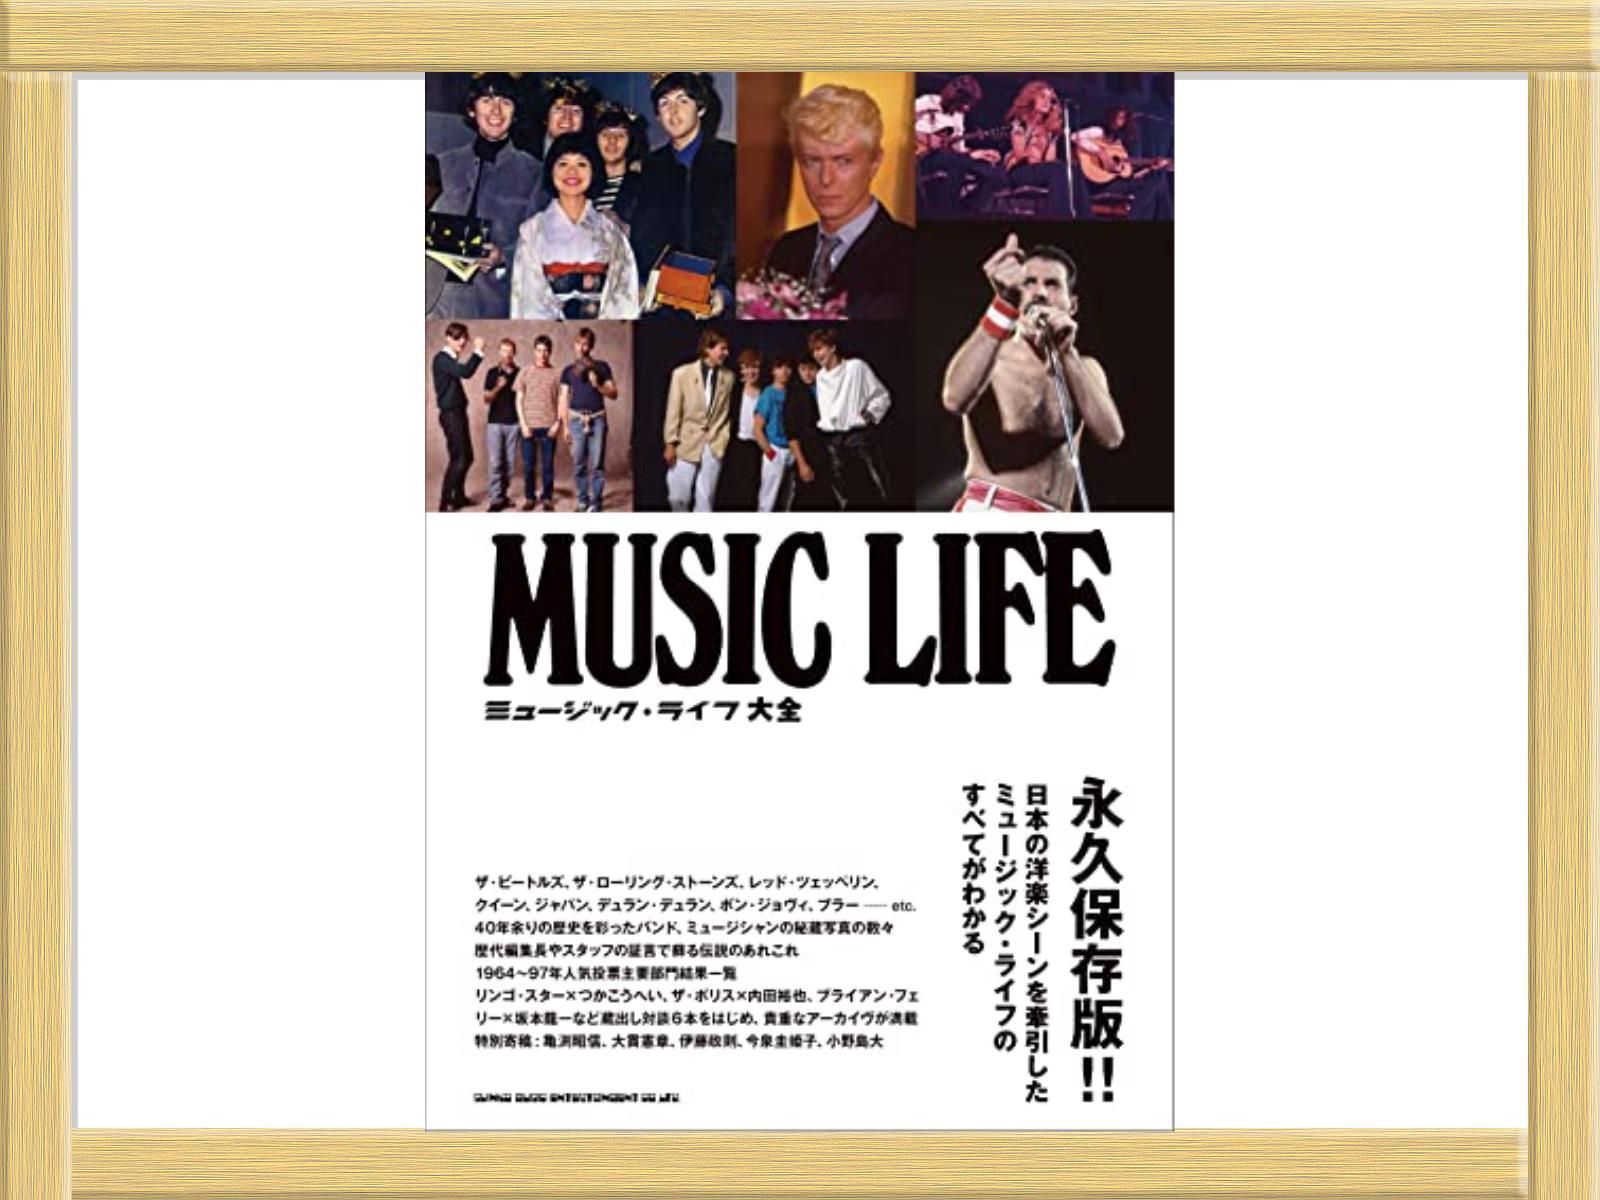 ミュージック・ライフ 大全 MUSIC LIFE 永久保存版-